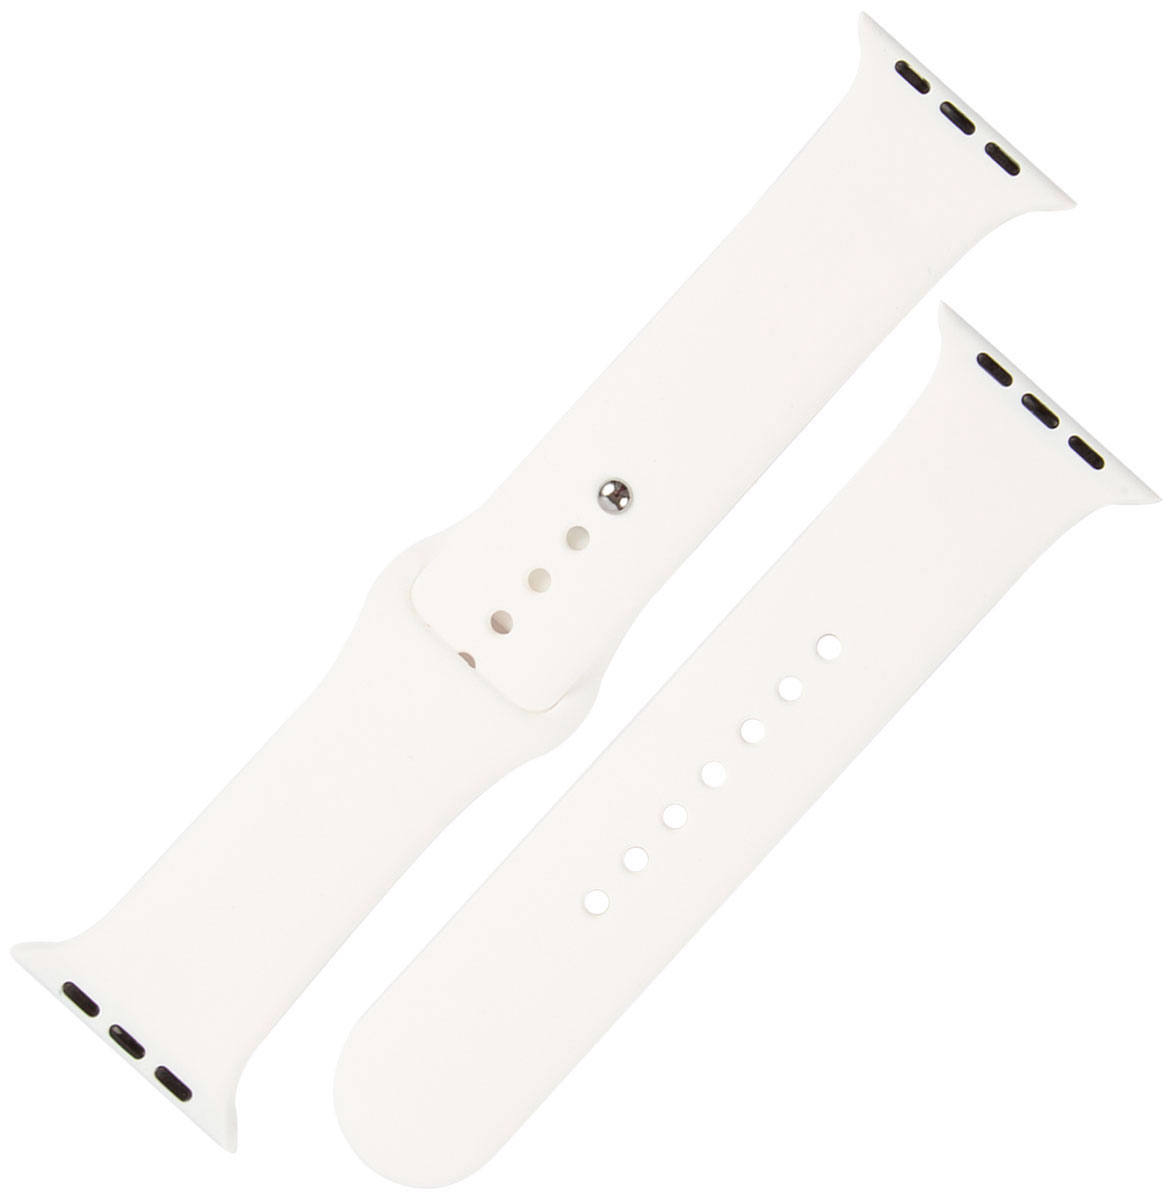 Ремешок силиконовый mObility для Apple watch – 42-44 мм (S3/S4/S5 SE/S6), белый ремешок силиконовый mobility для apple watch – 42 44 мм s3 s4 s5 se s6 яркий желтый